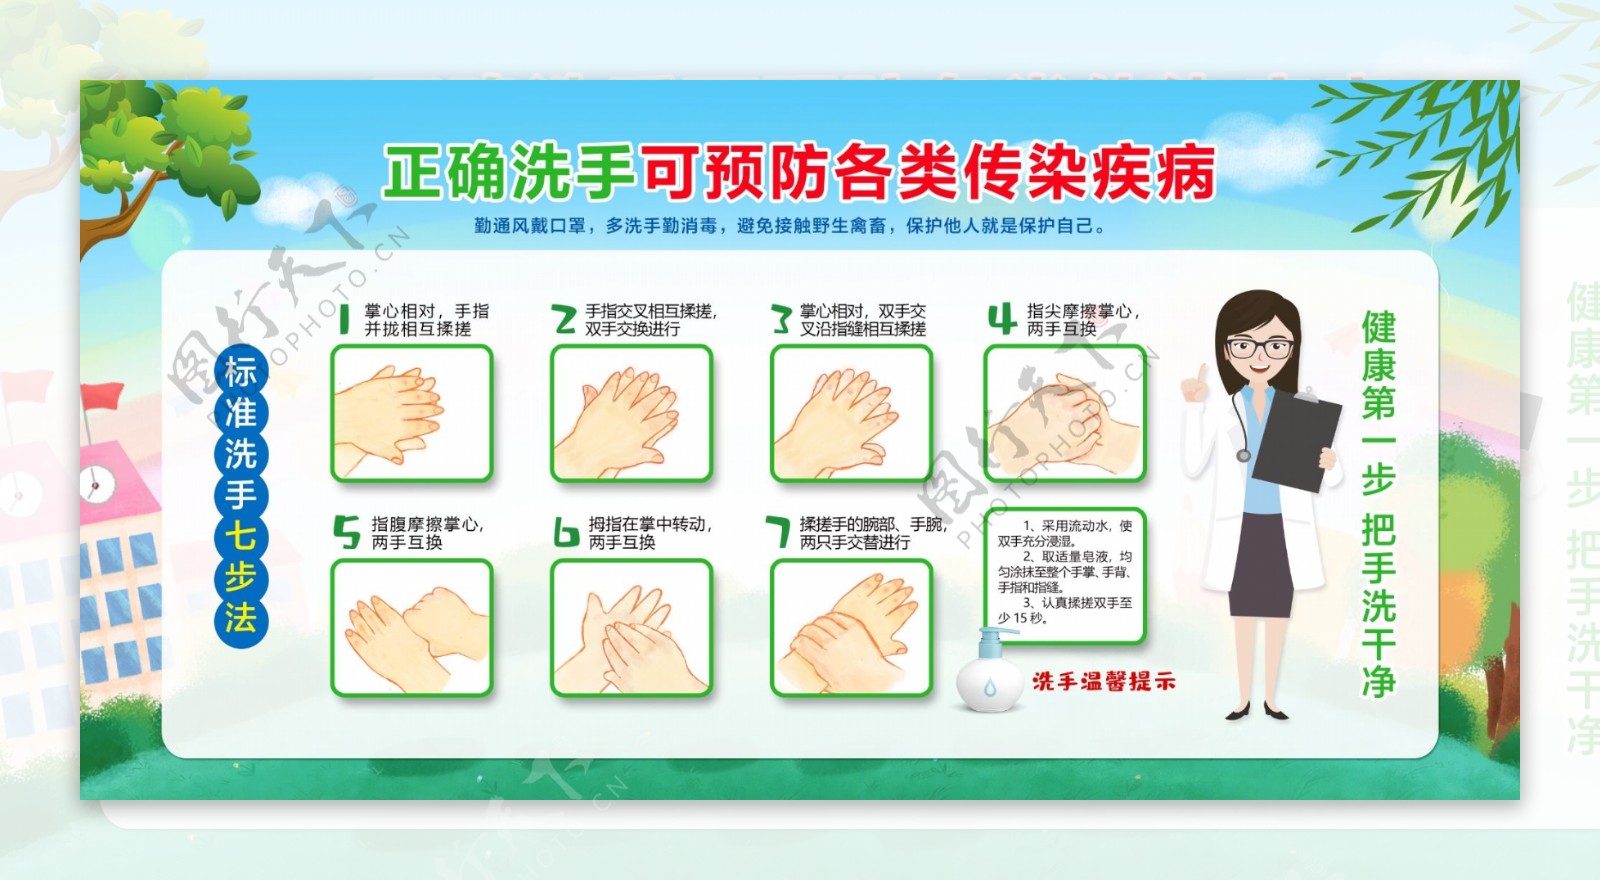 标准洗手7步骤